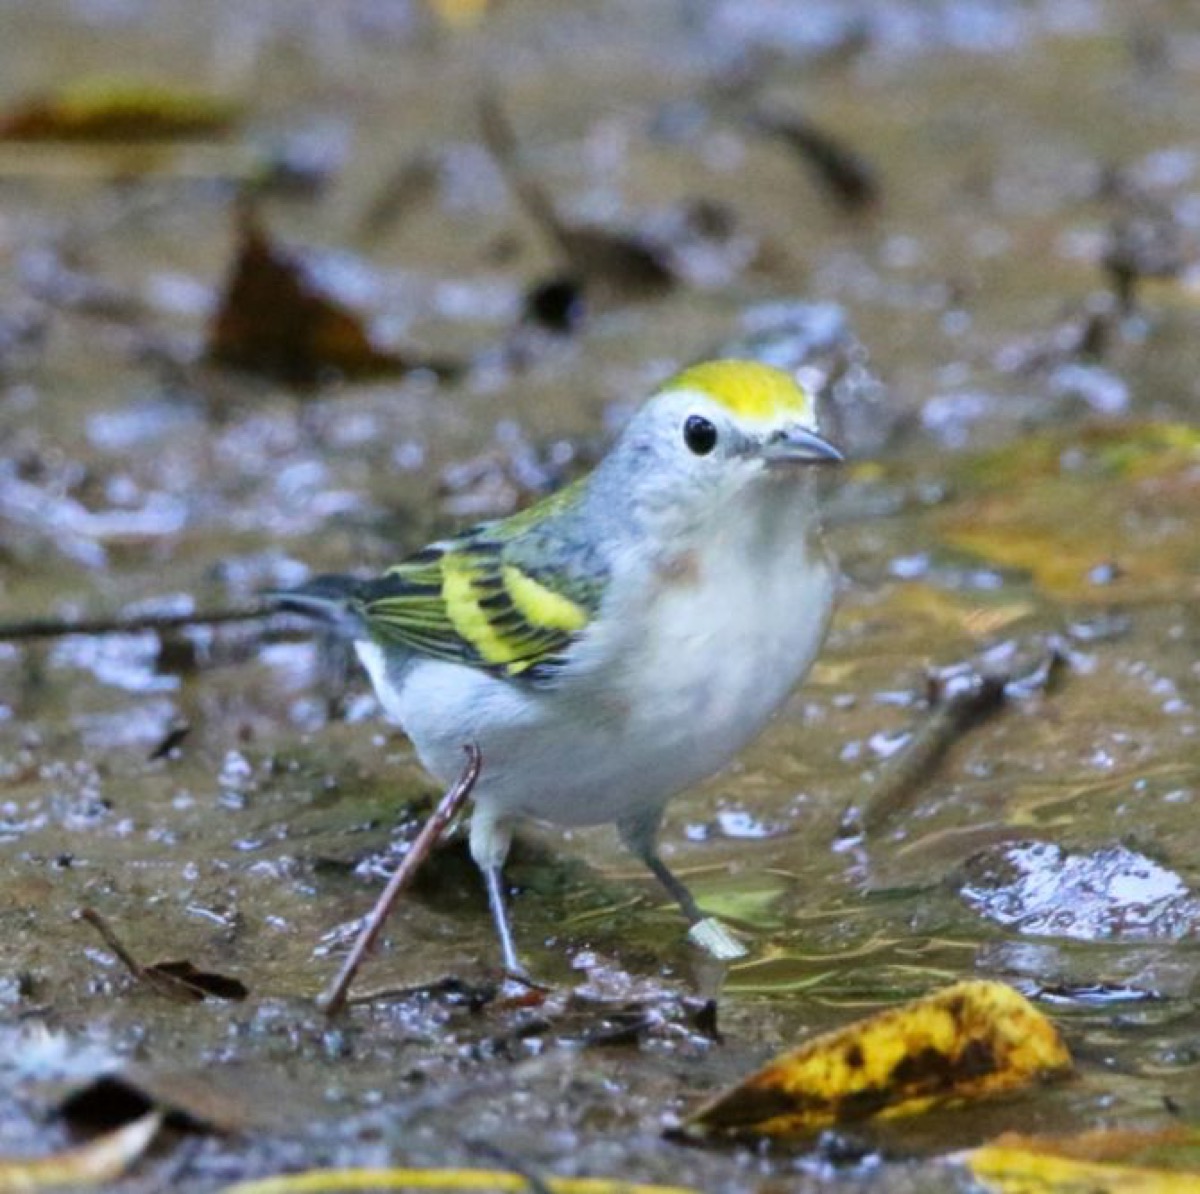 Three-species bird hybrid cutest animals discovered in 2018